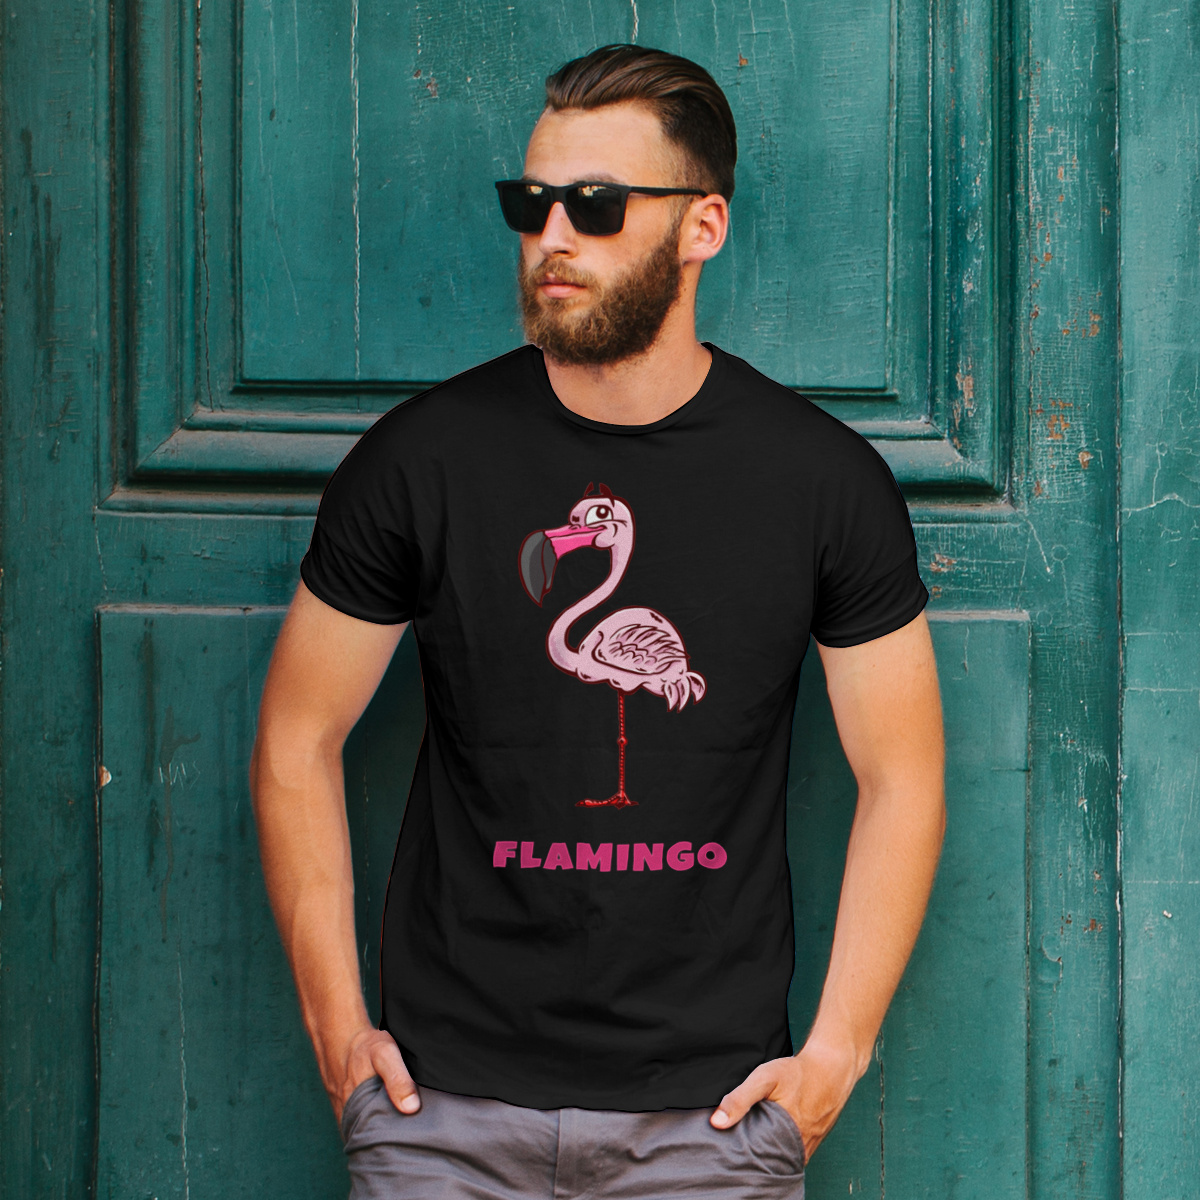 Flaming Flamingo - Męska Koszulka Czarna